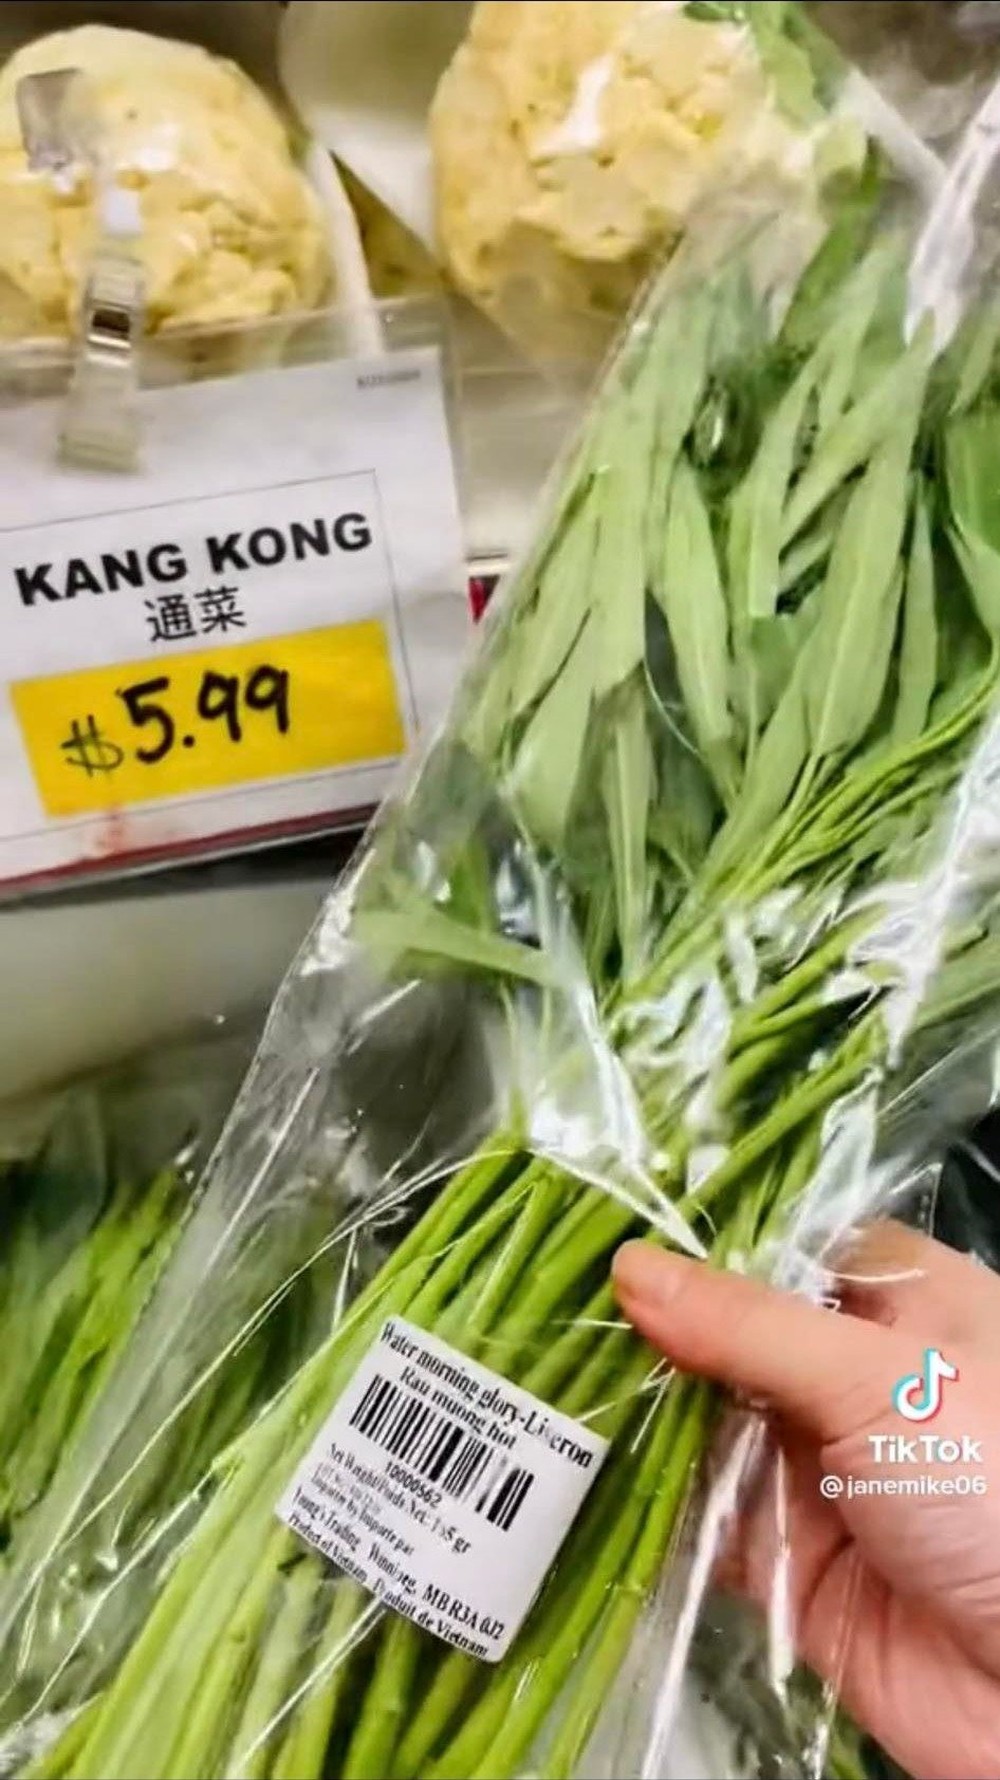 Loại rau ở Việt Nam bán đầy ngoài chợ sang nước ngoài thành thứ siêu đắt đỏ, 10 cọng rau giá cả trăm nghìn - Ảnh 2.